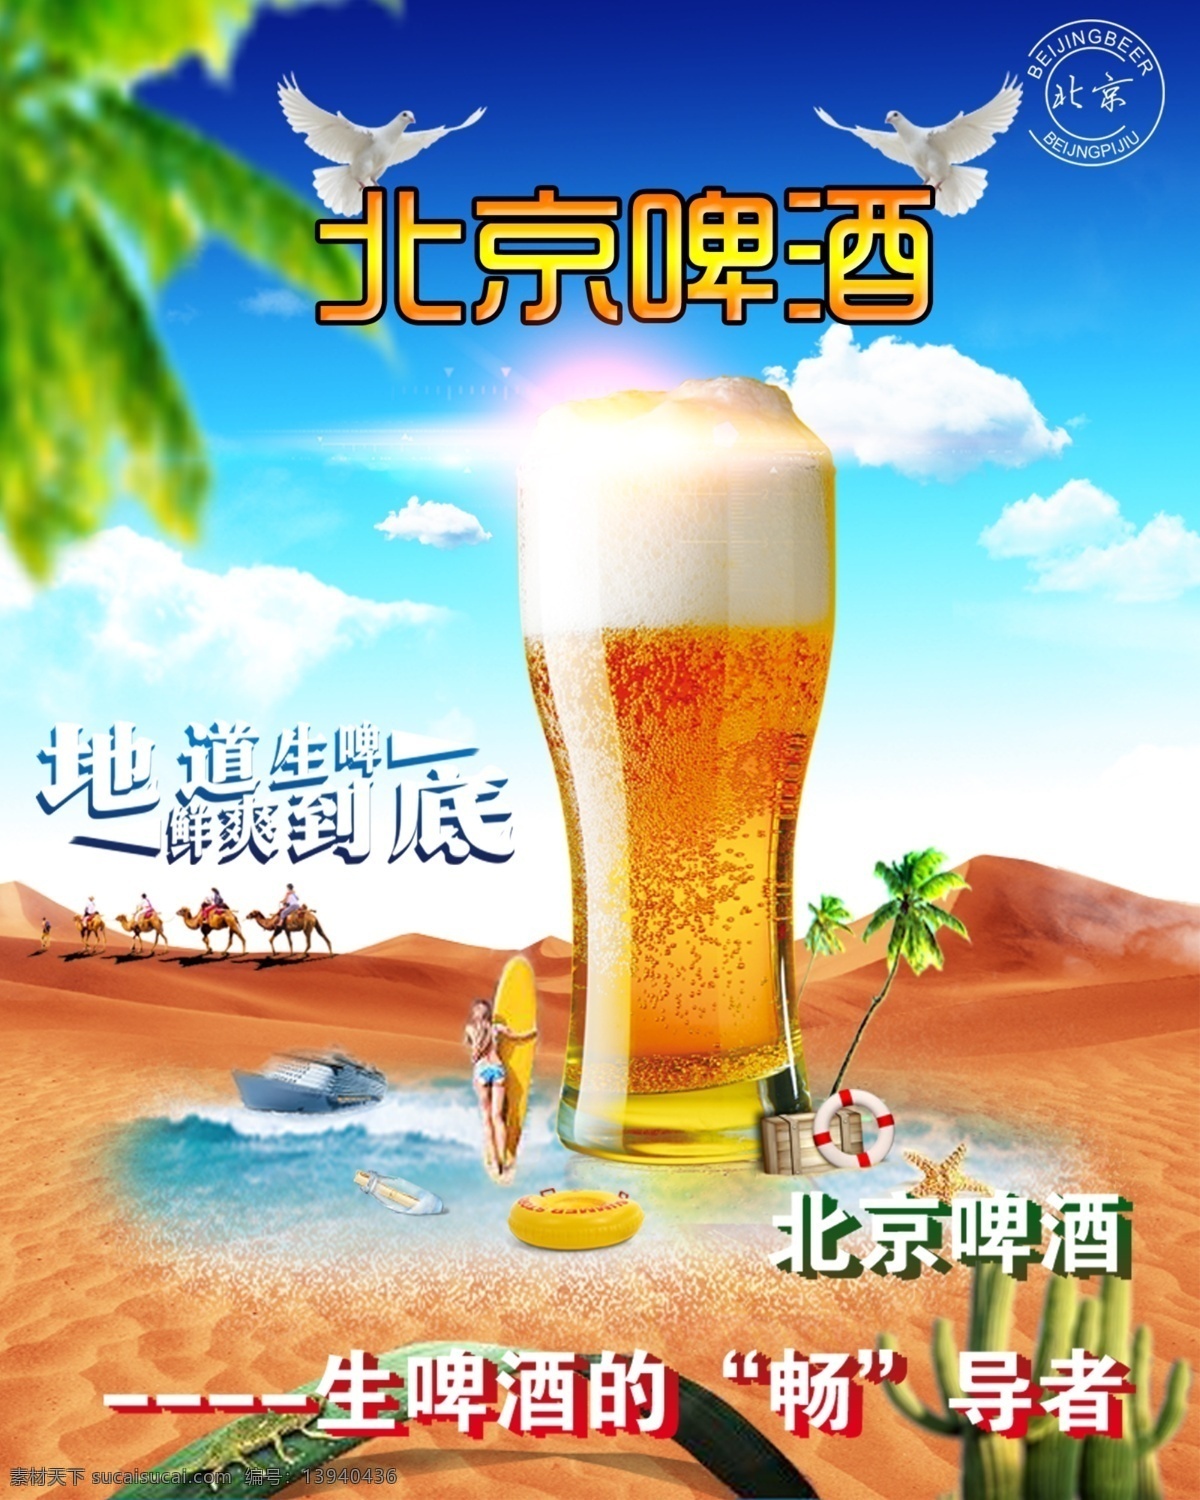 北京啤酒海报 沙漠 海洋 骆驼 啤酒 北京